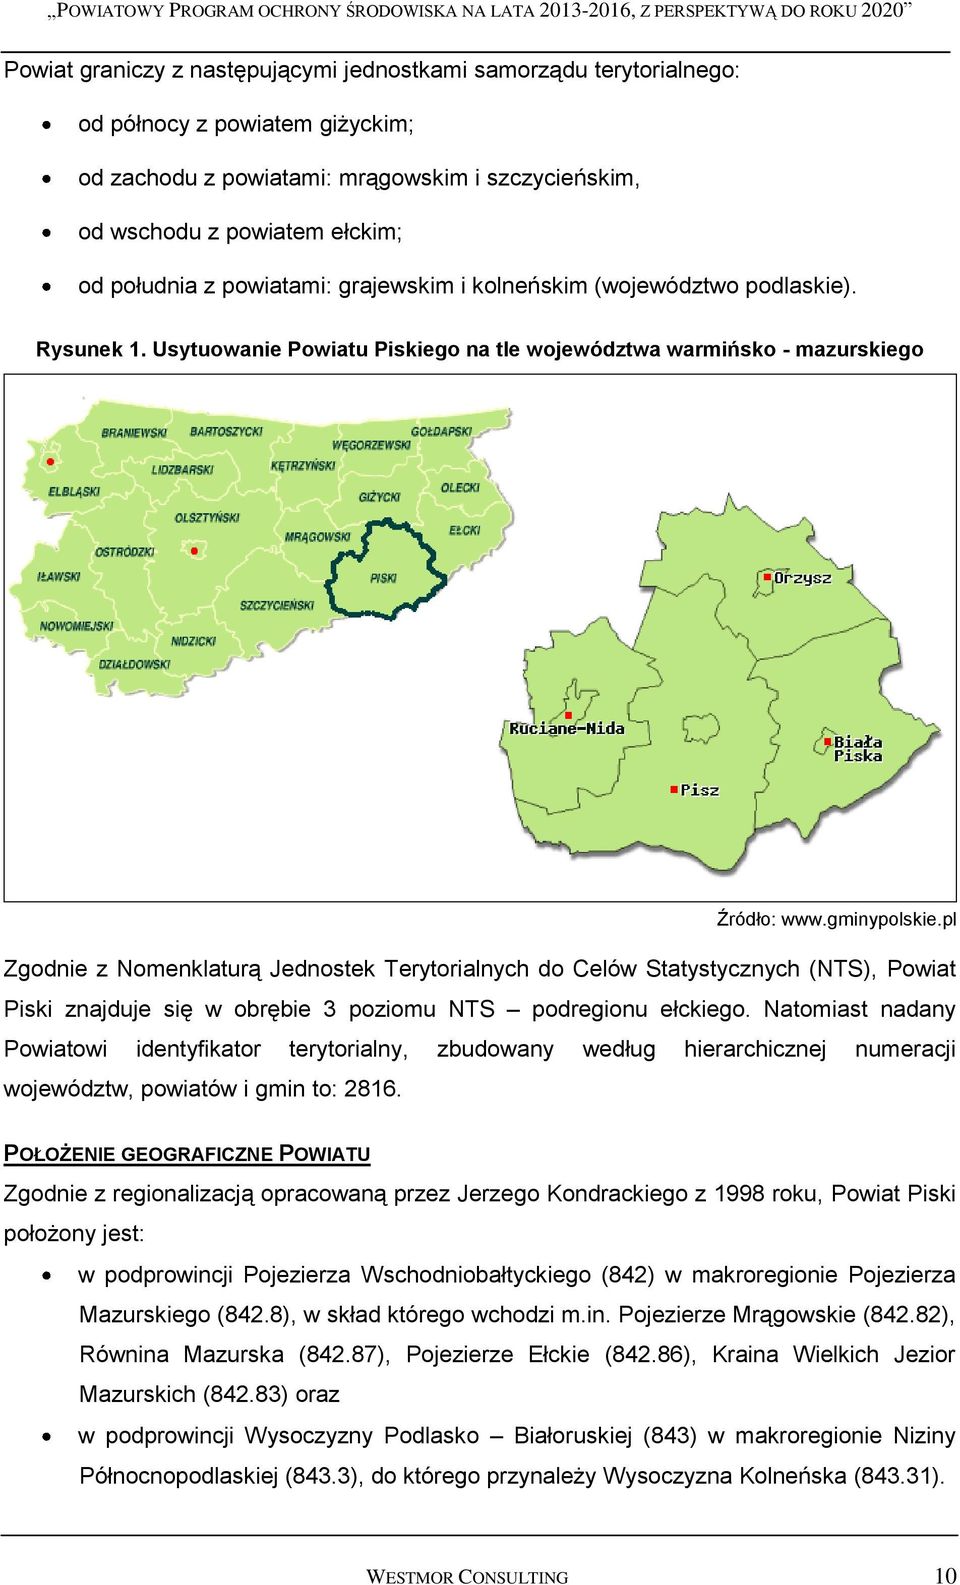 pl Zgodnie z Nomenklaturą Jednostek Terytorialnych do Celów Statystycznych (NTS), Powiat Piski znajduje się w obrębie 3 poziomu NTS podregionu ełckiego.